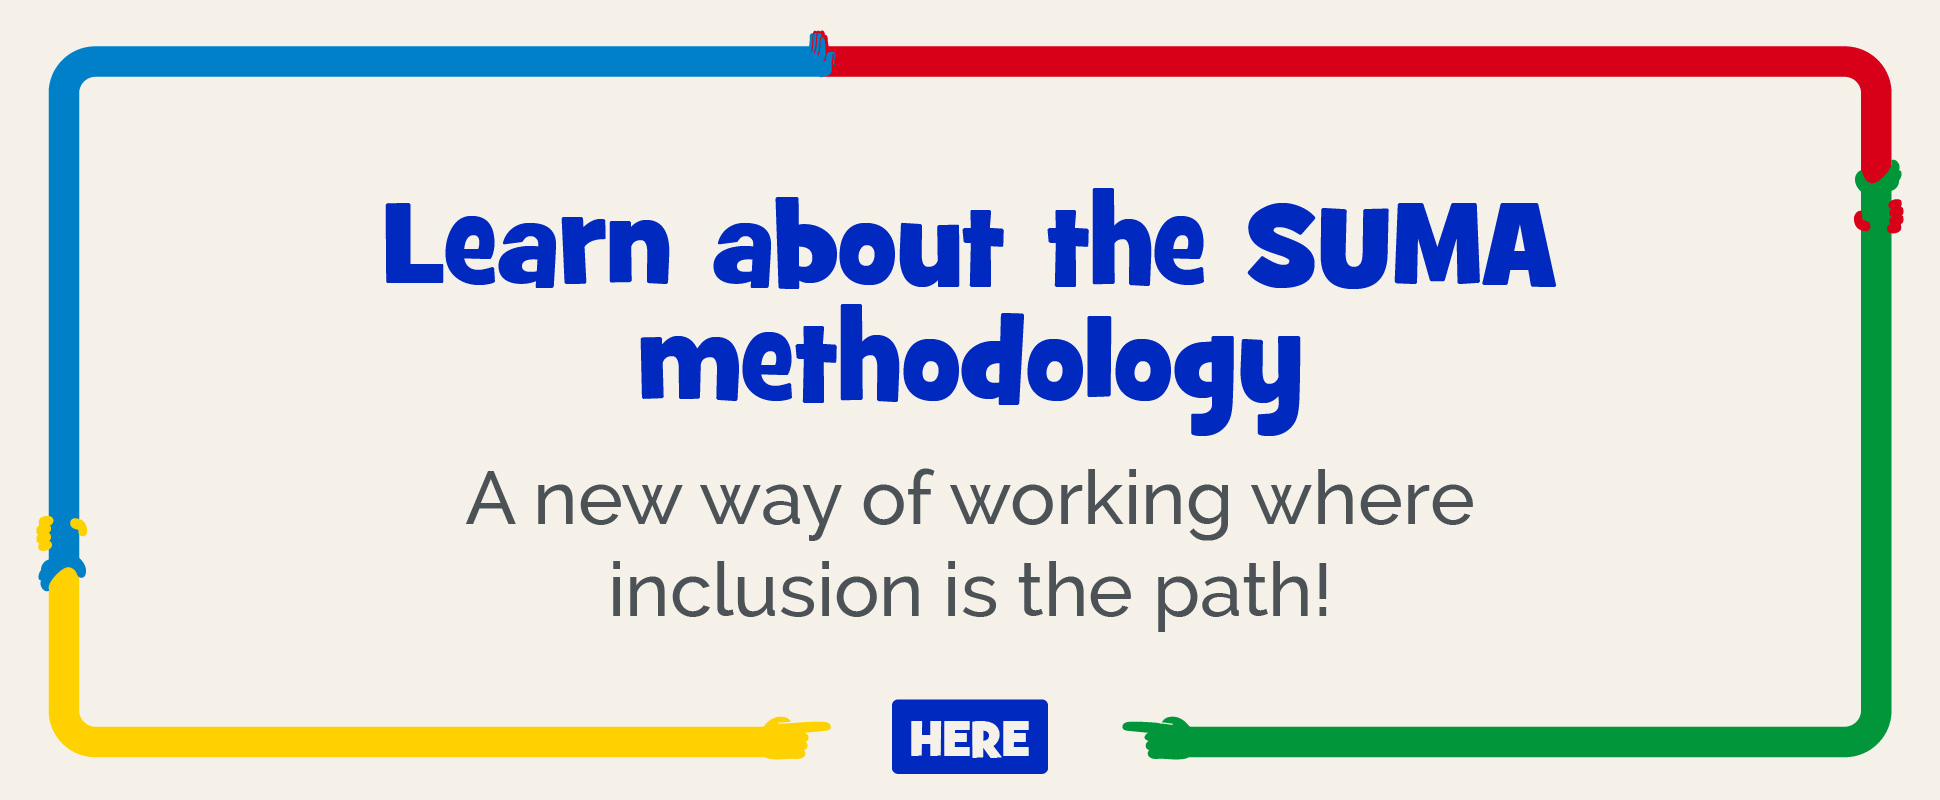 La metodología SUMA ha sido desarrollada para los docentes, por expertos en el modelo de enseñanza DUA.